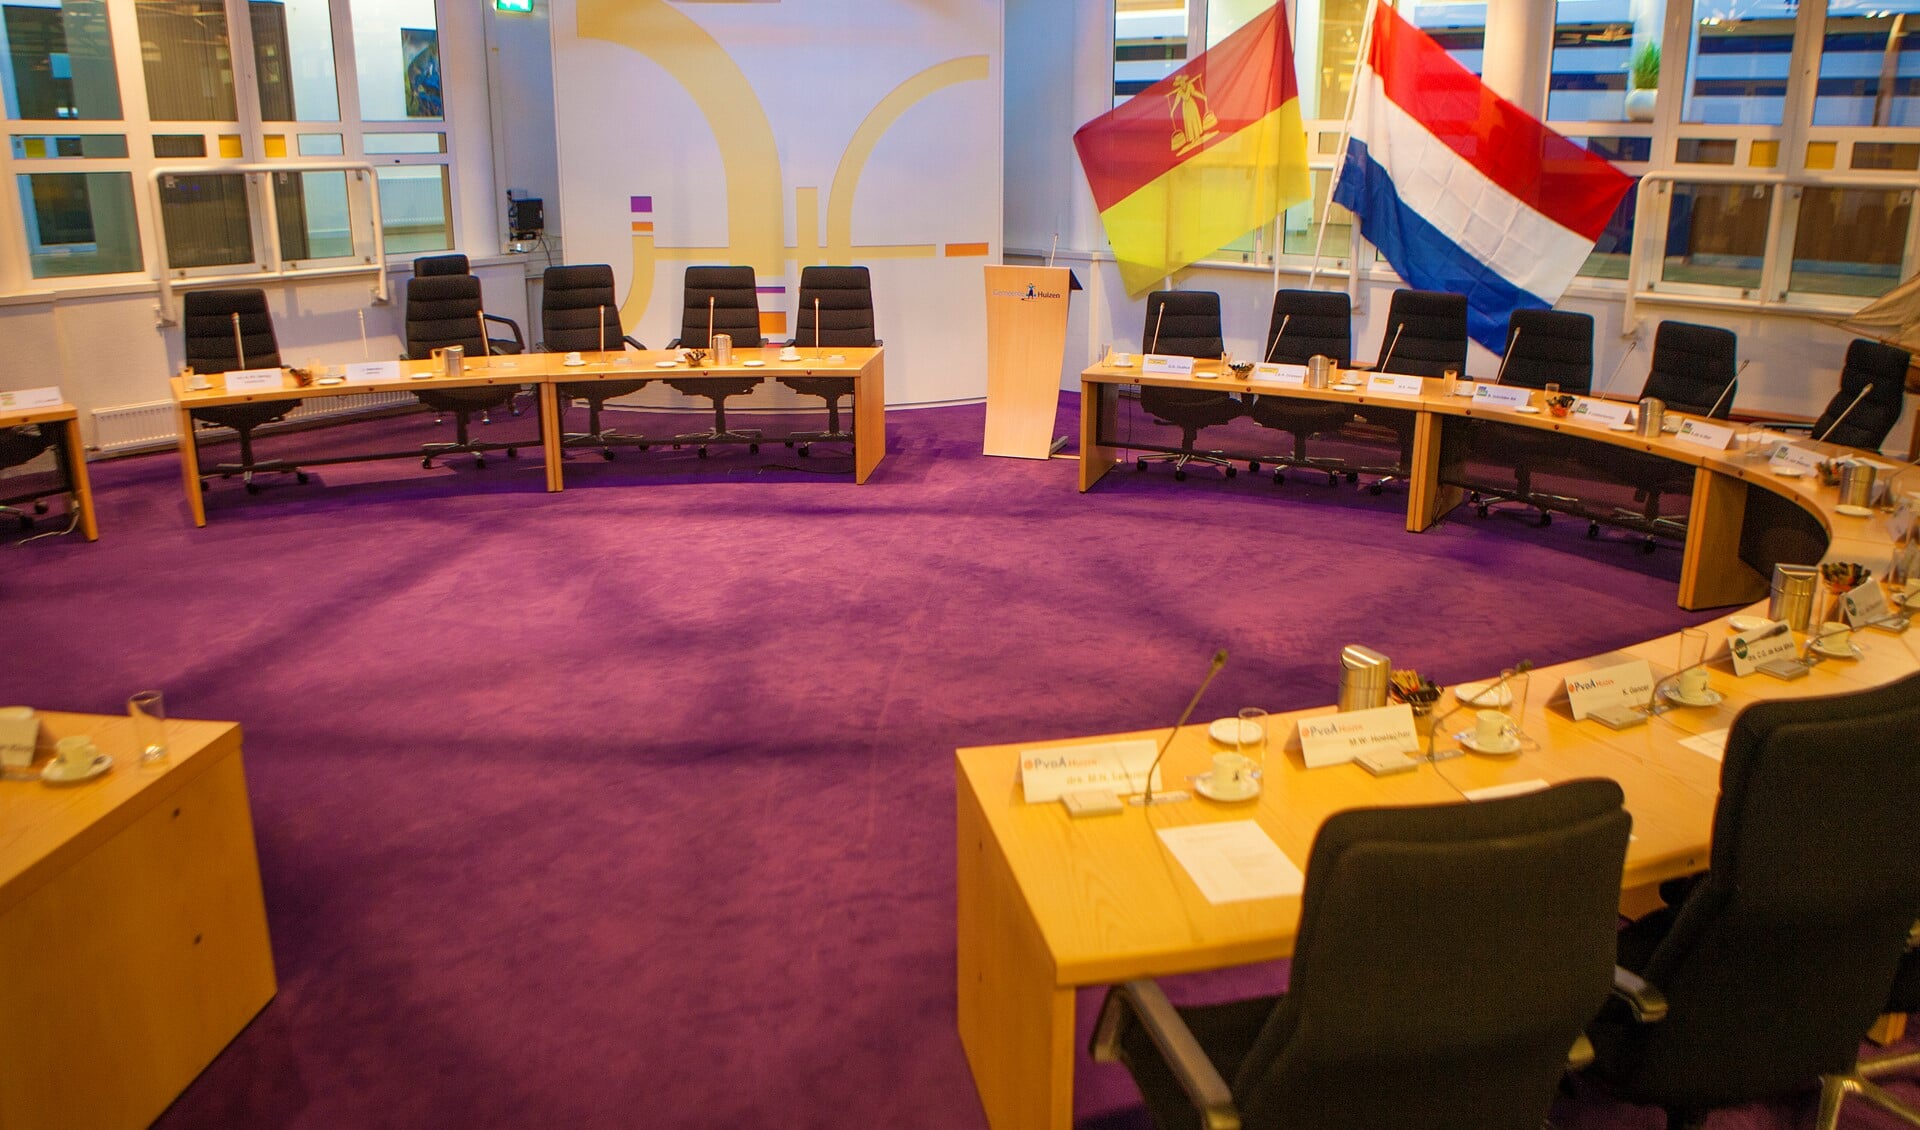 De commissievergadering vindt plaats in de raadzaal en de coronaregels worden in acht genomen.